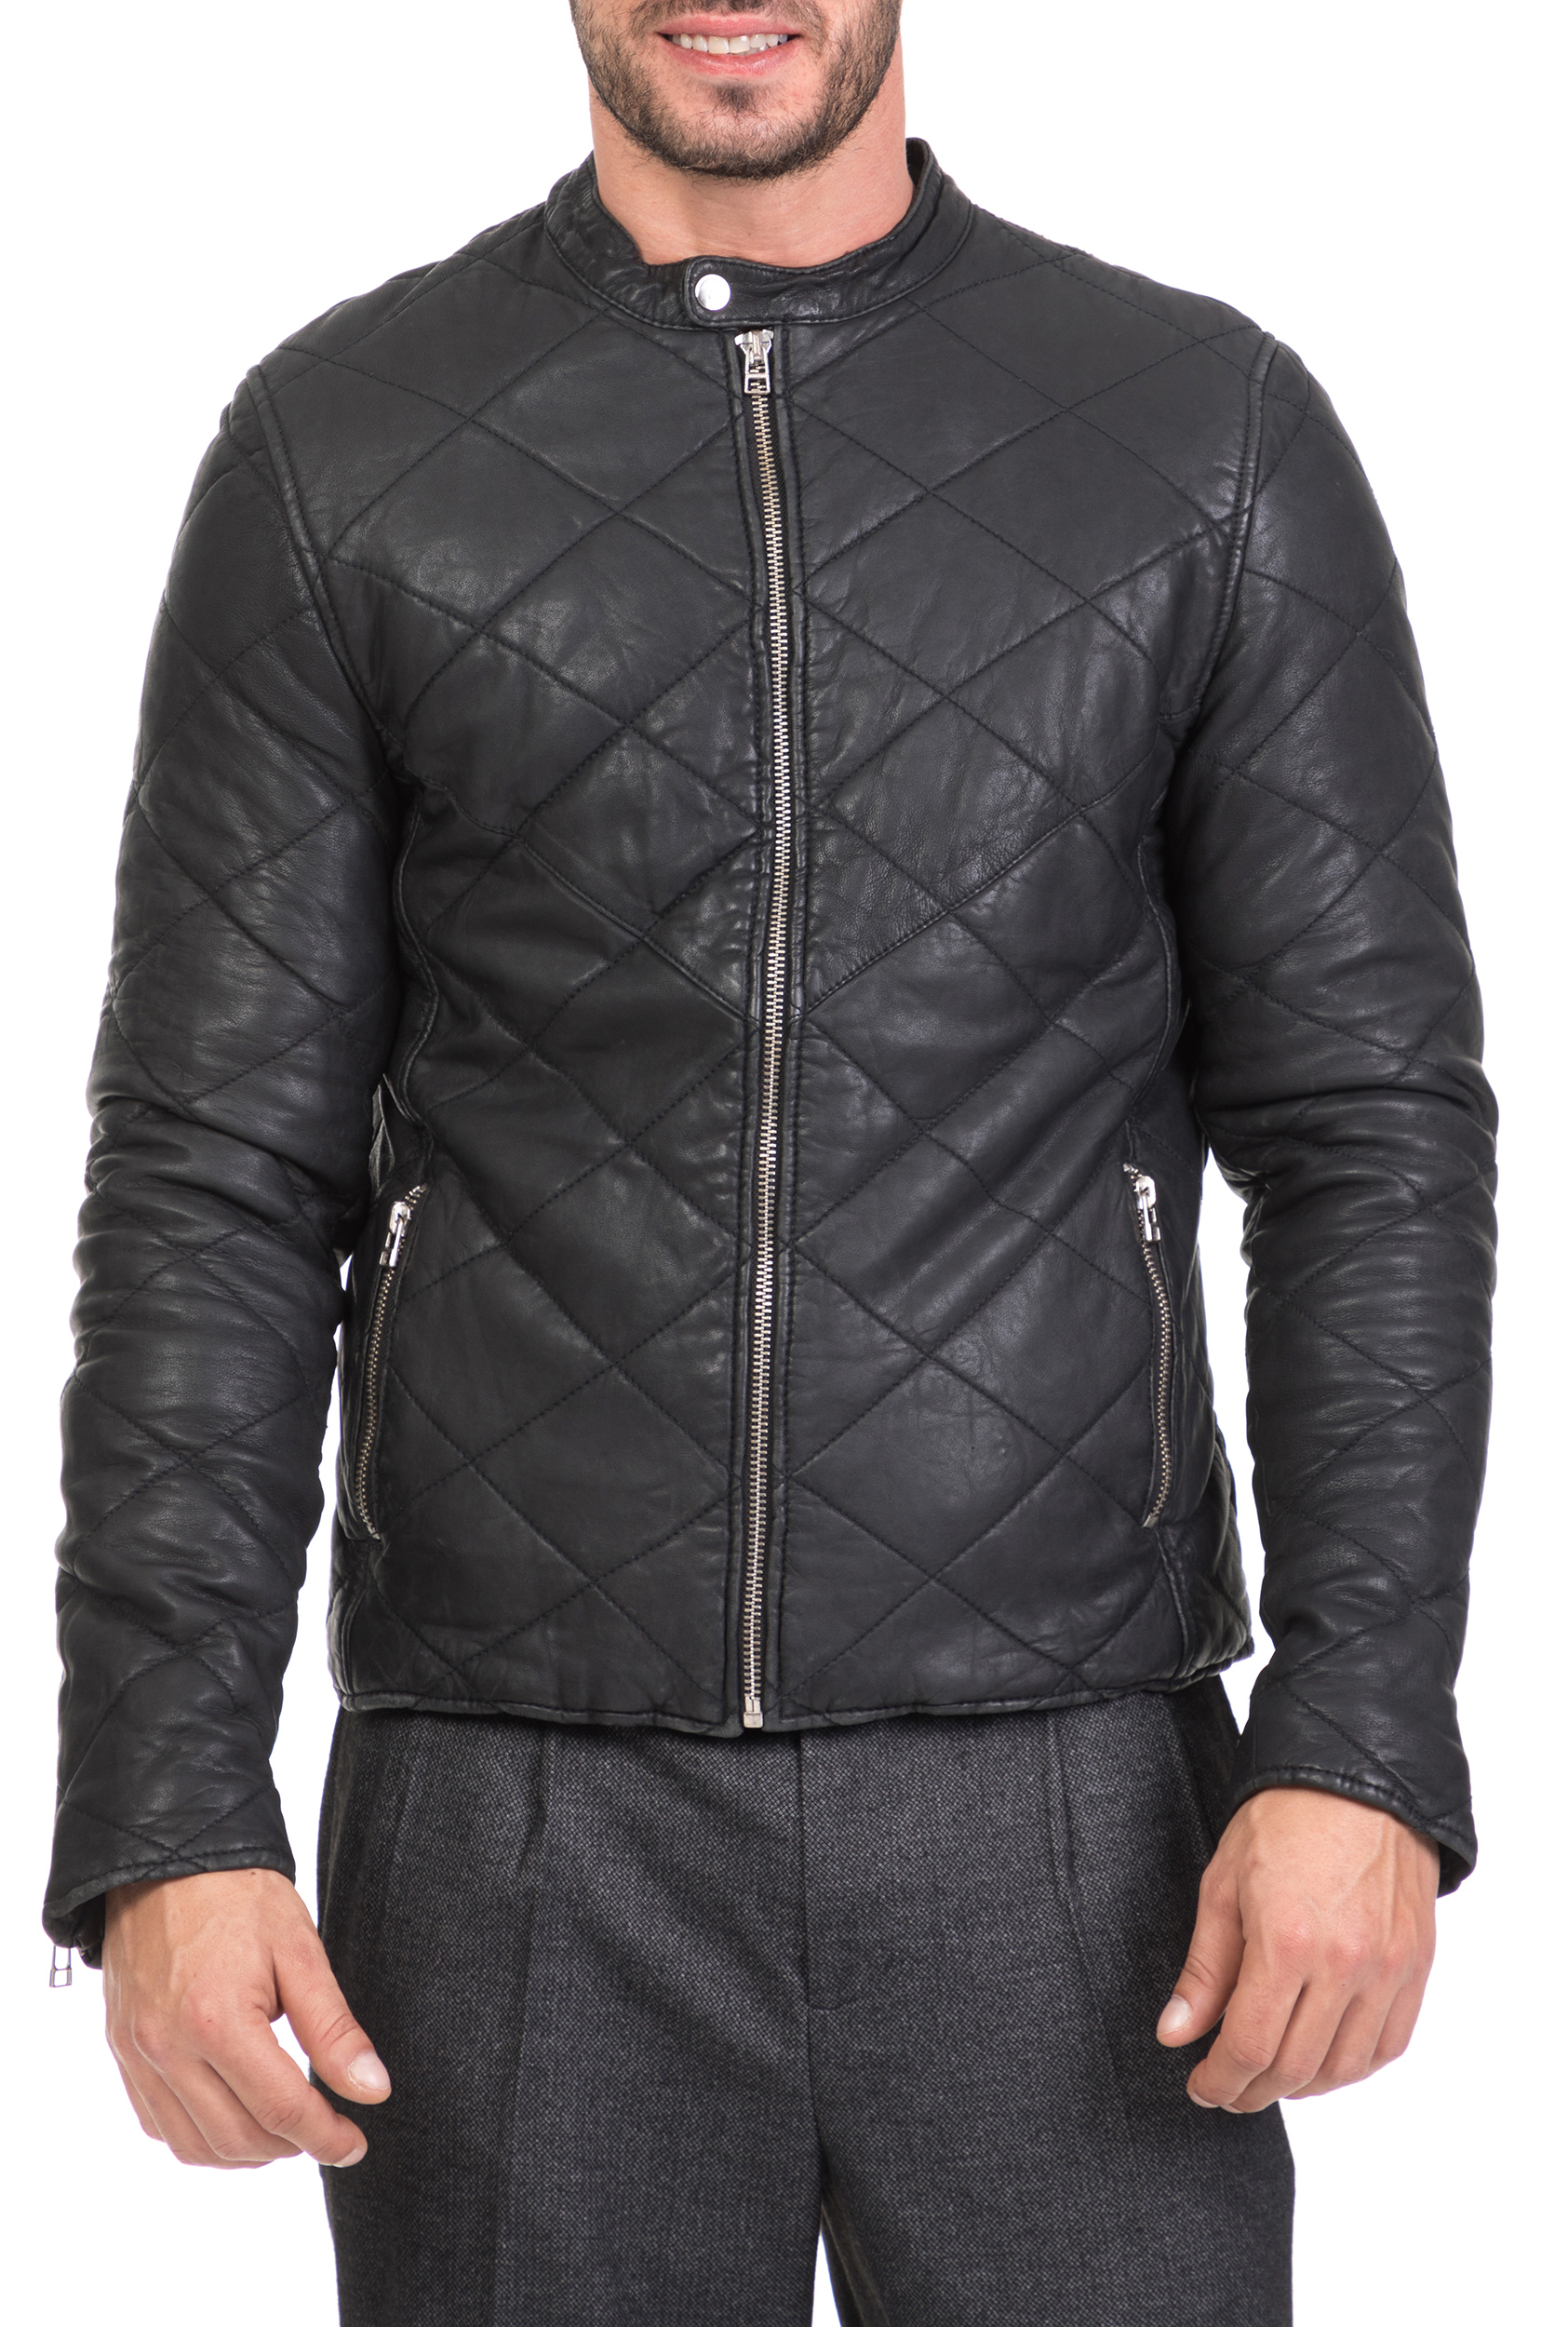 Ανδρικά/Ρούχα/Πανωφόρια/Τζάκετς GOOSECRAFT - Ανδρικό δερμάτινο jacket GOOSECRAFT ANTHONY μαύρο